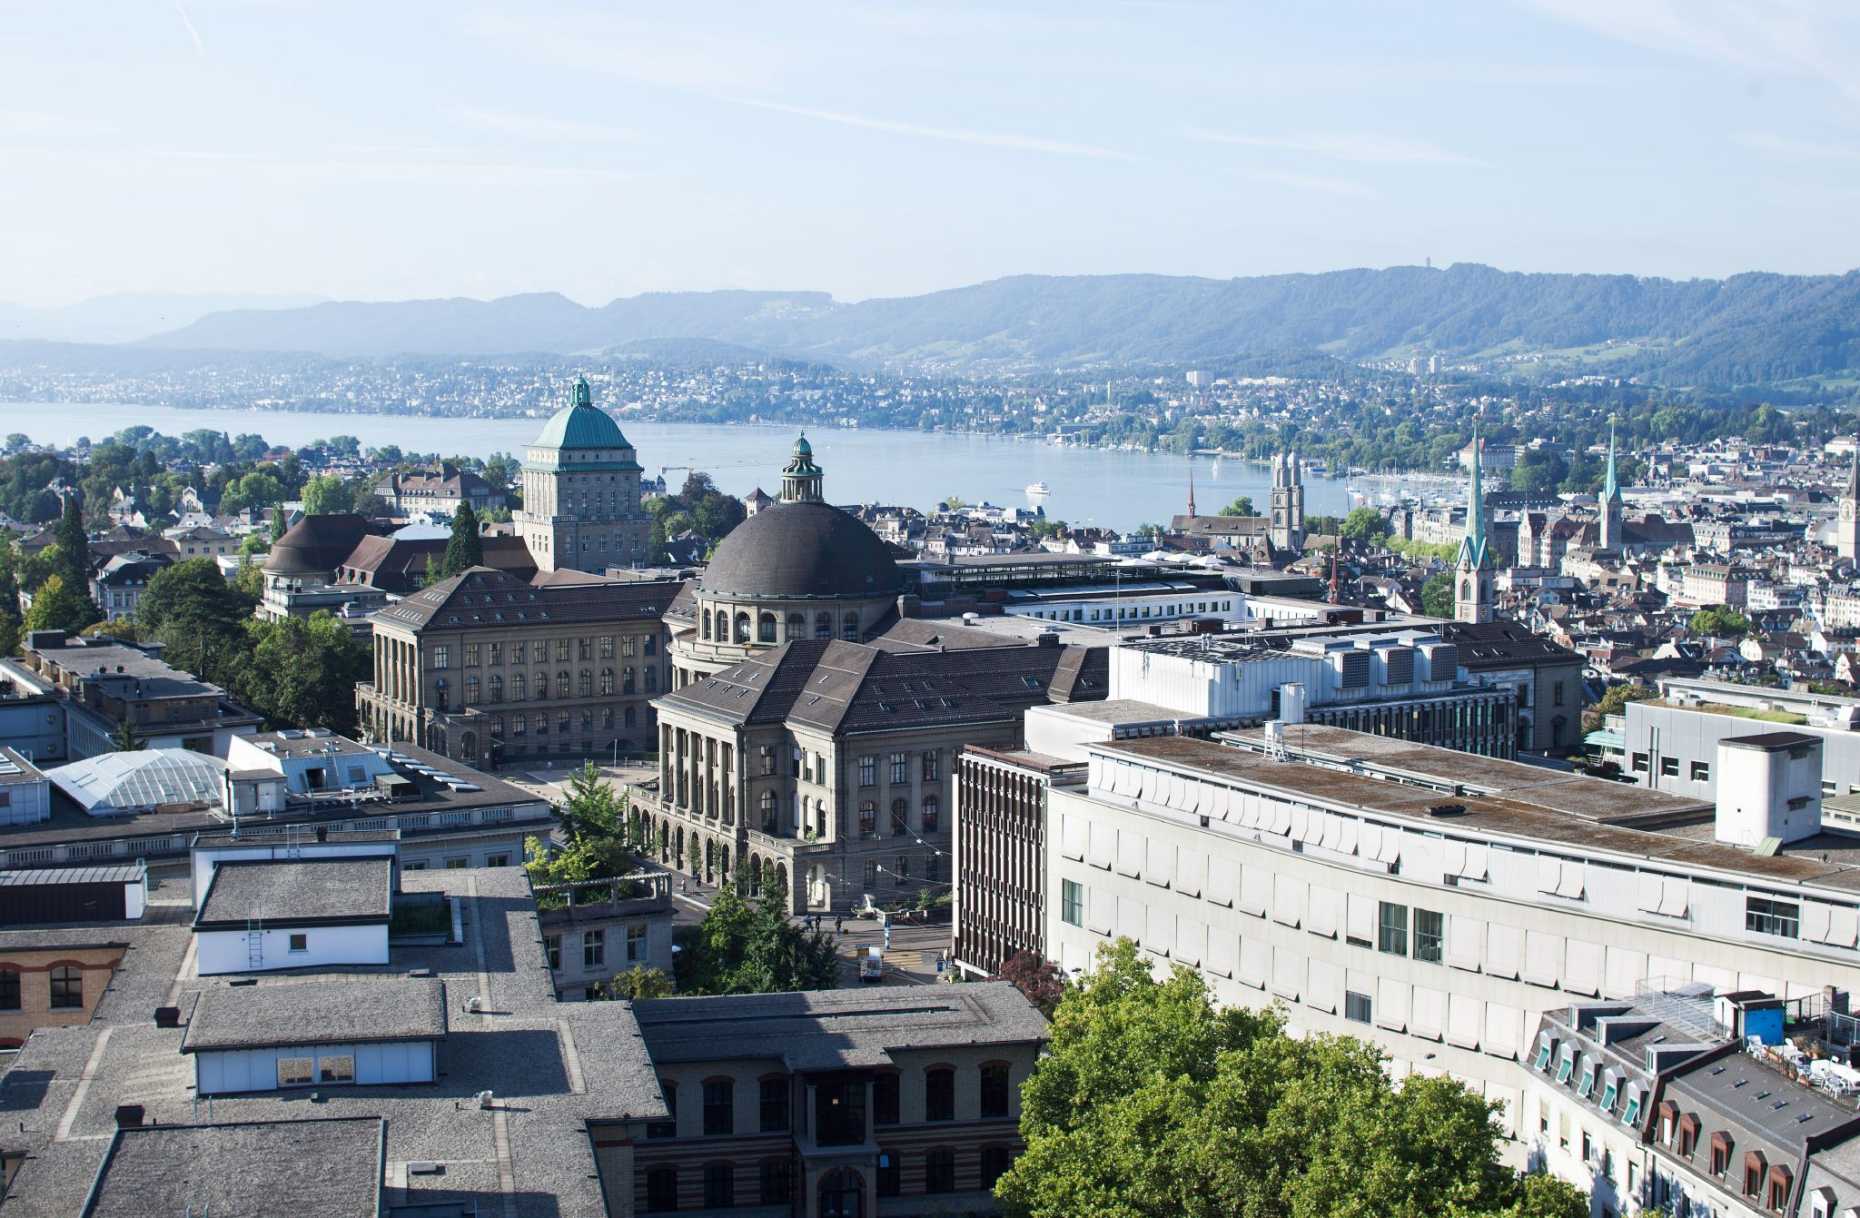 Enlarged view: ETH Zurich